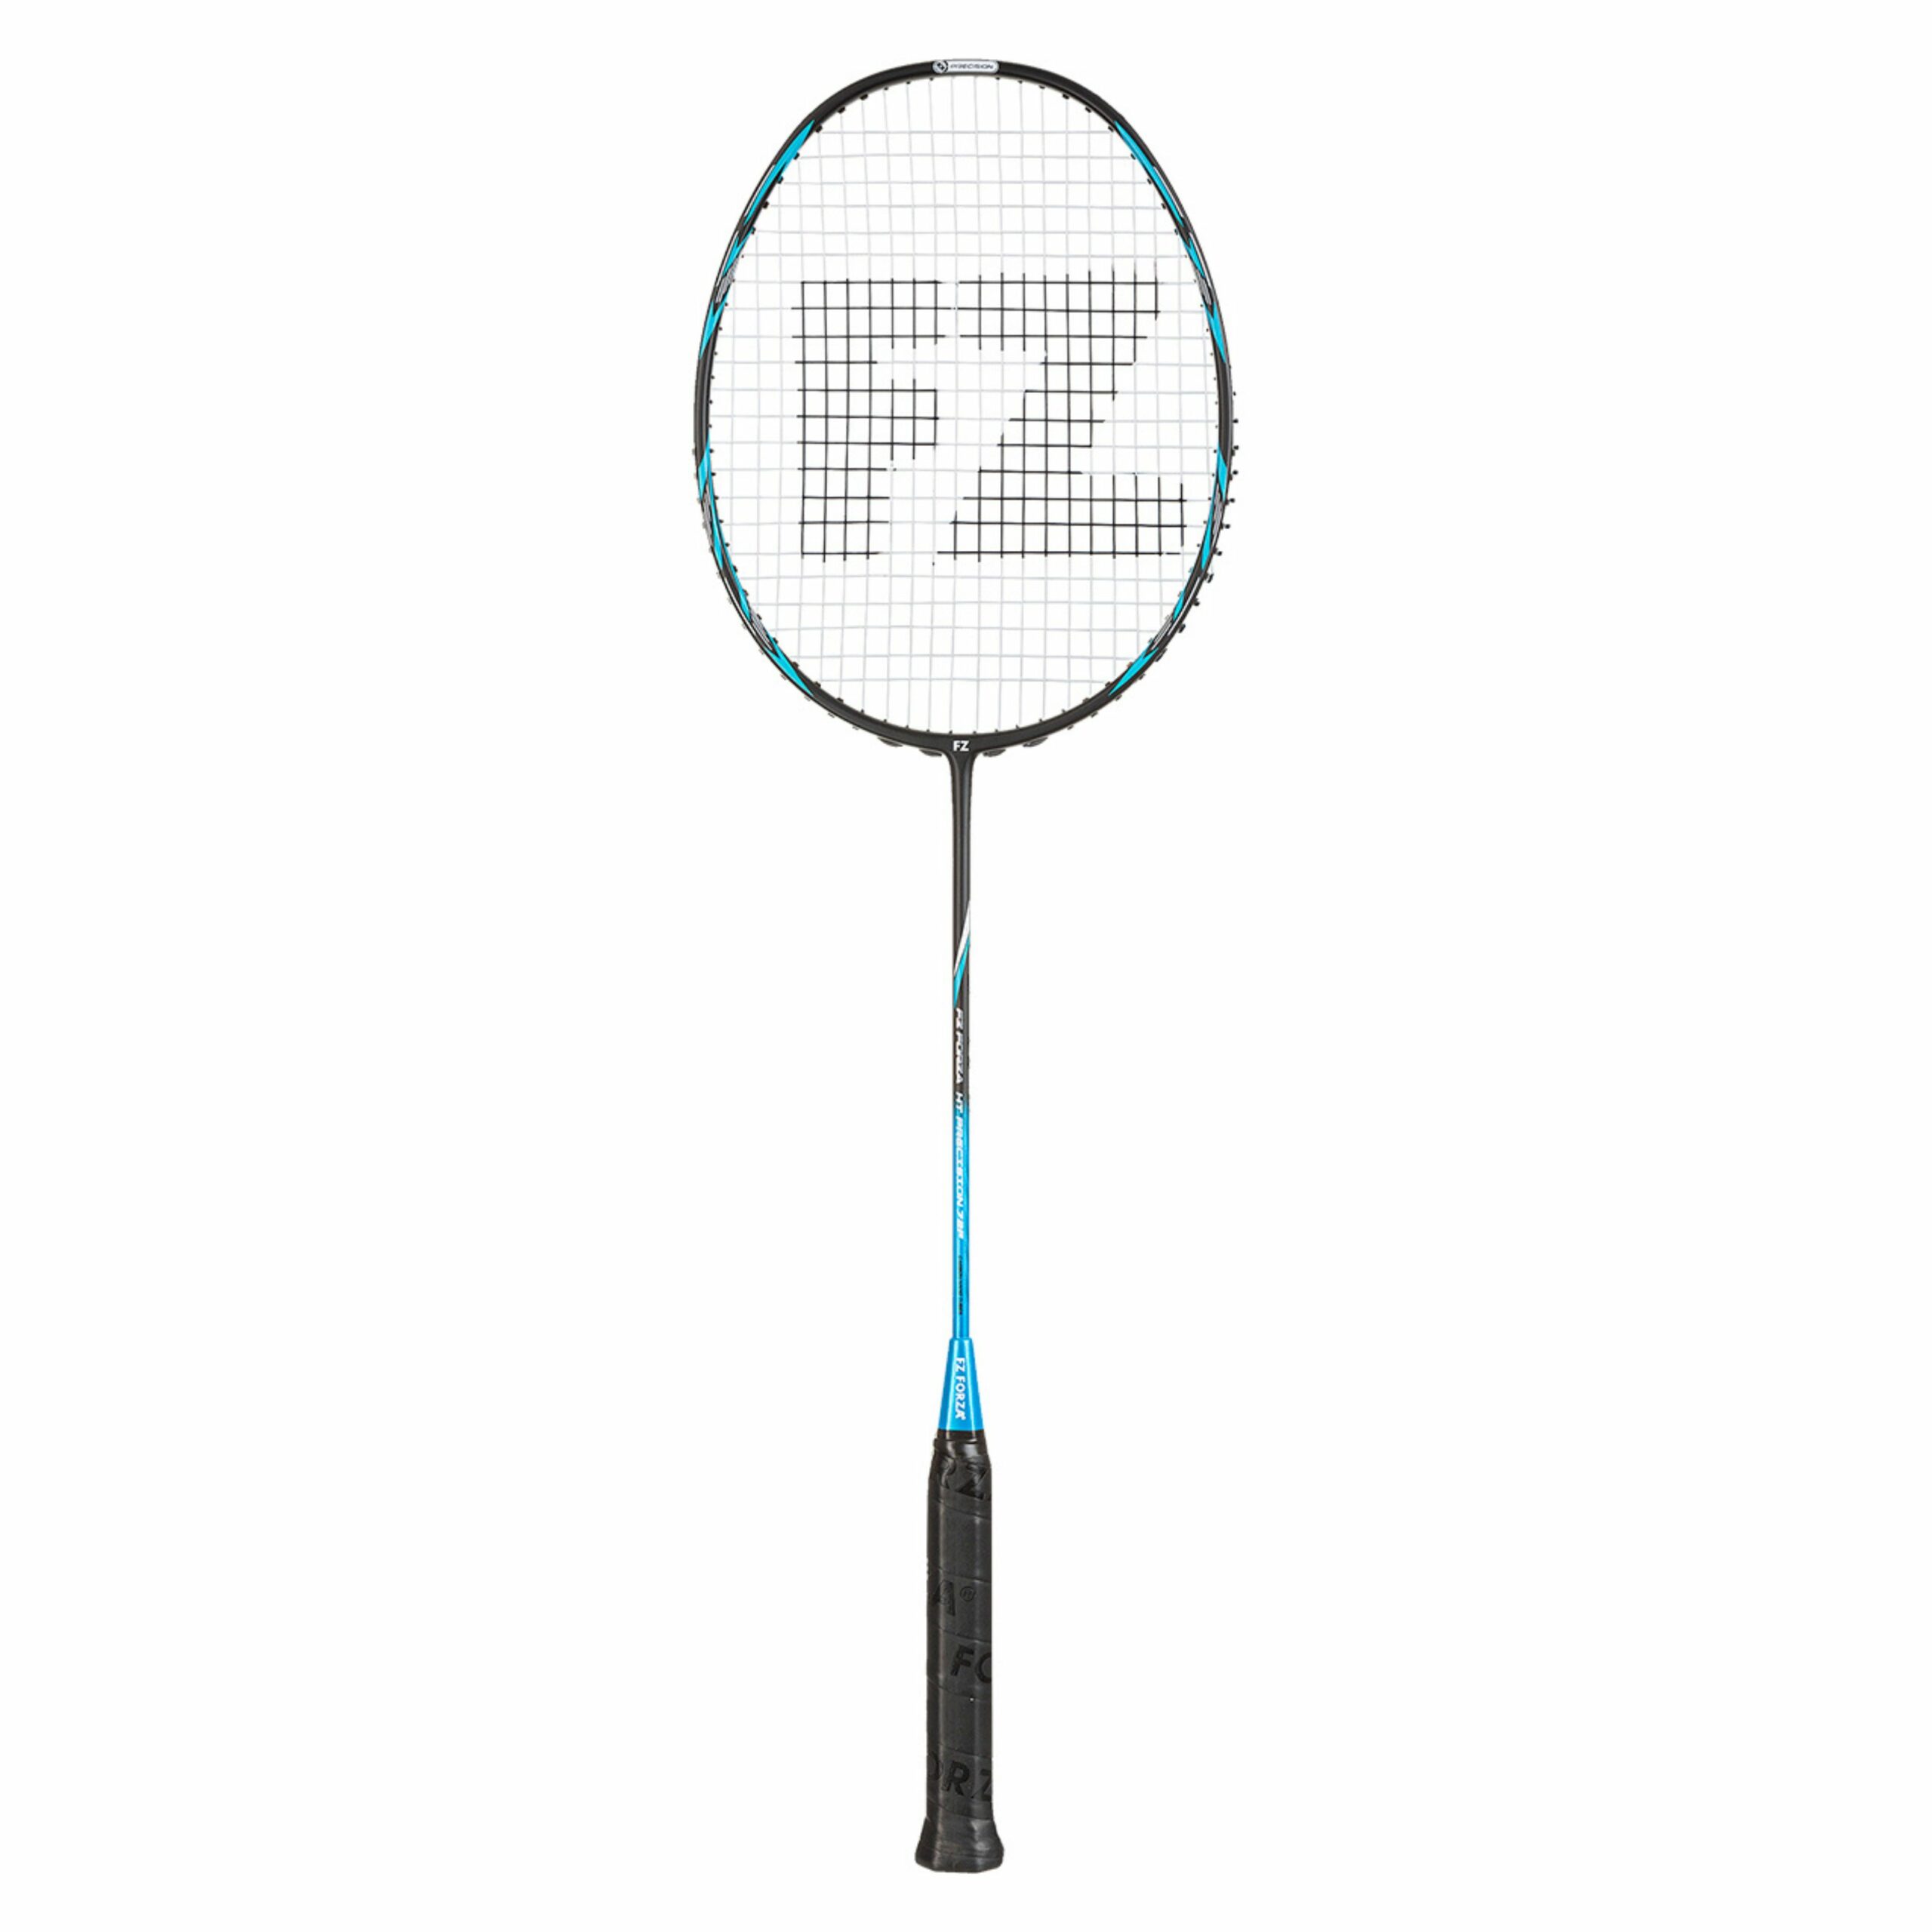 Forza Badminton | Forza → The Badminton Shop